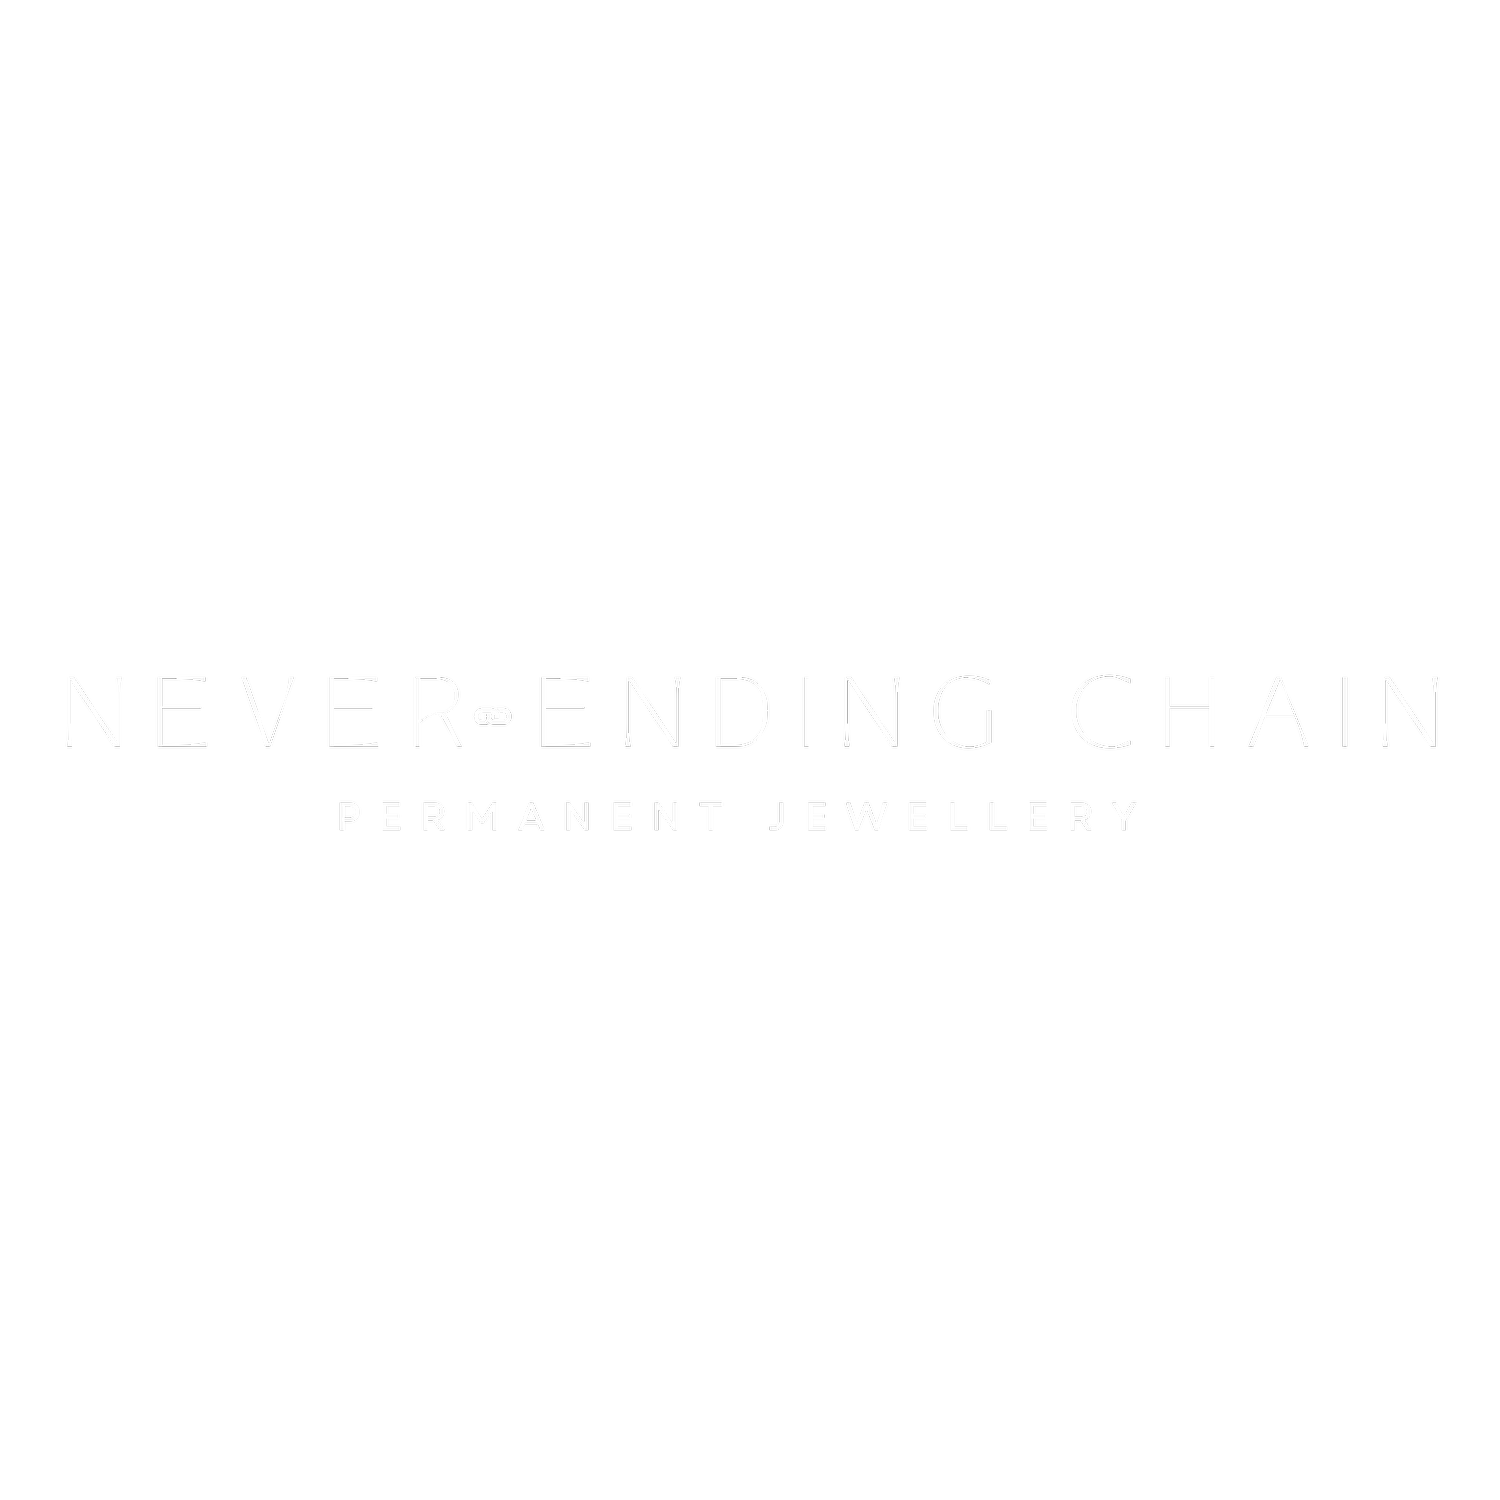 Never Ending Chain